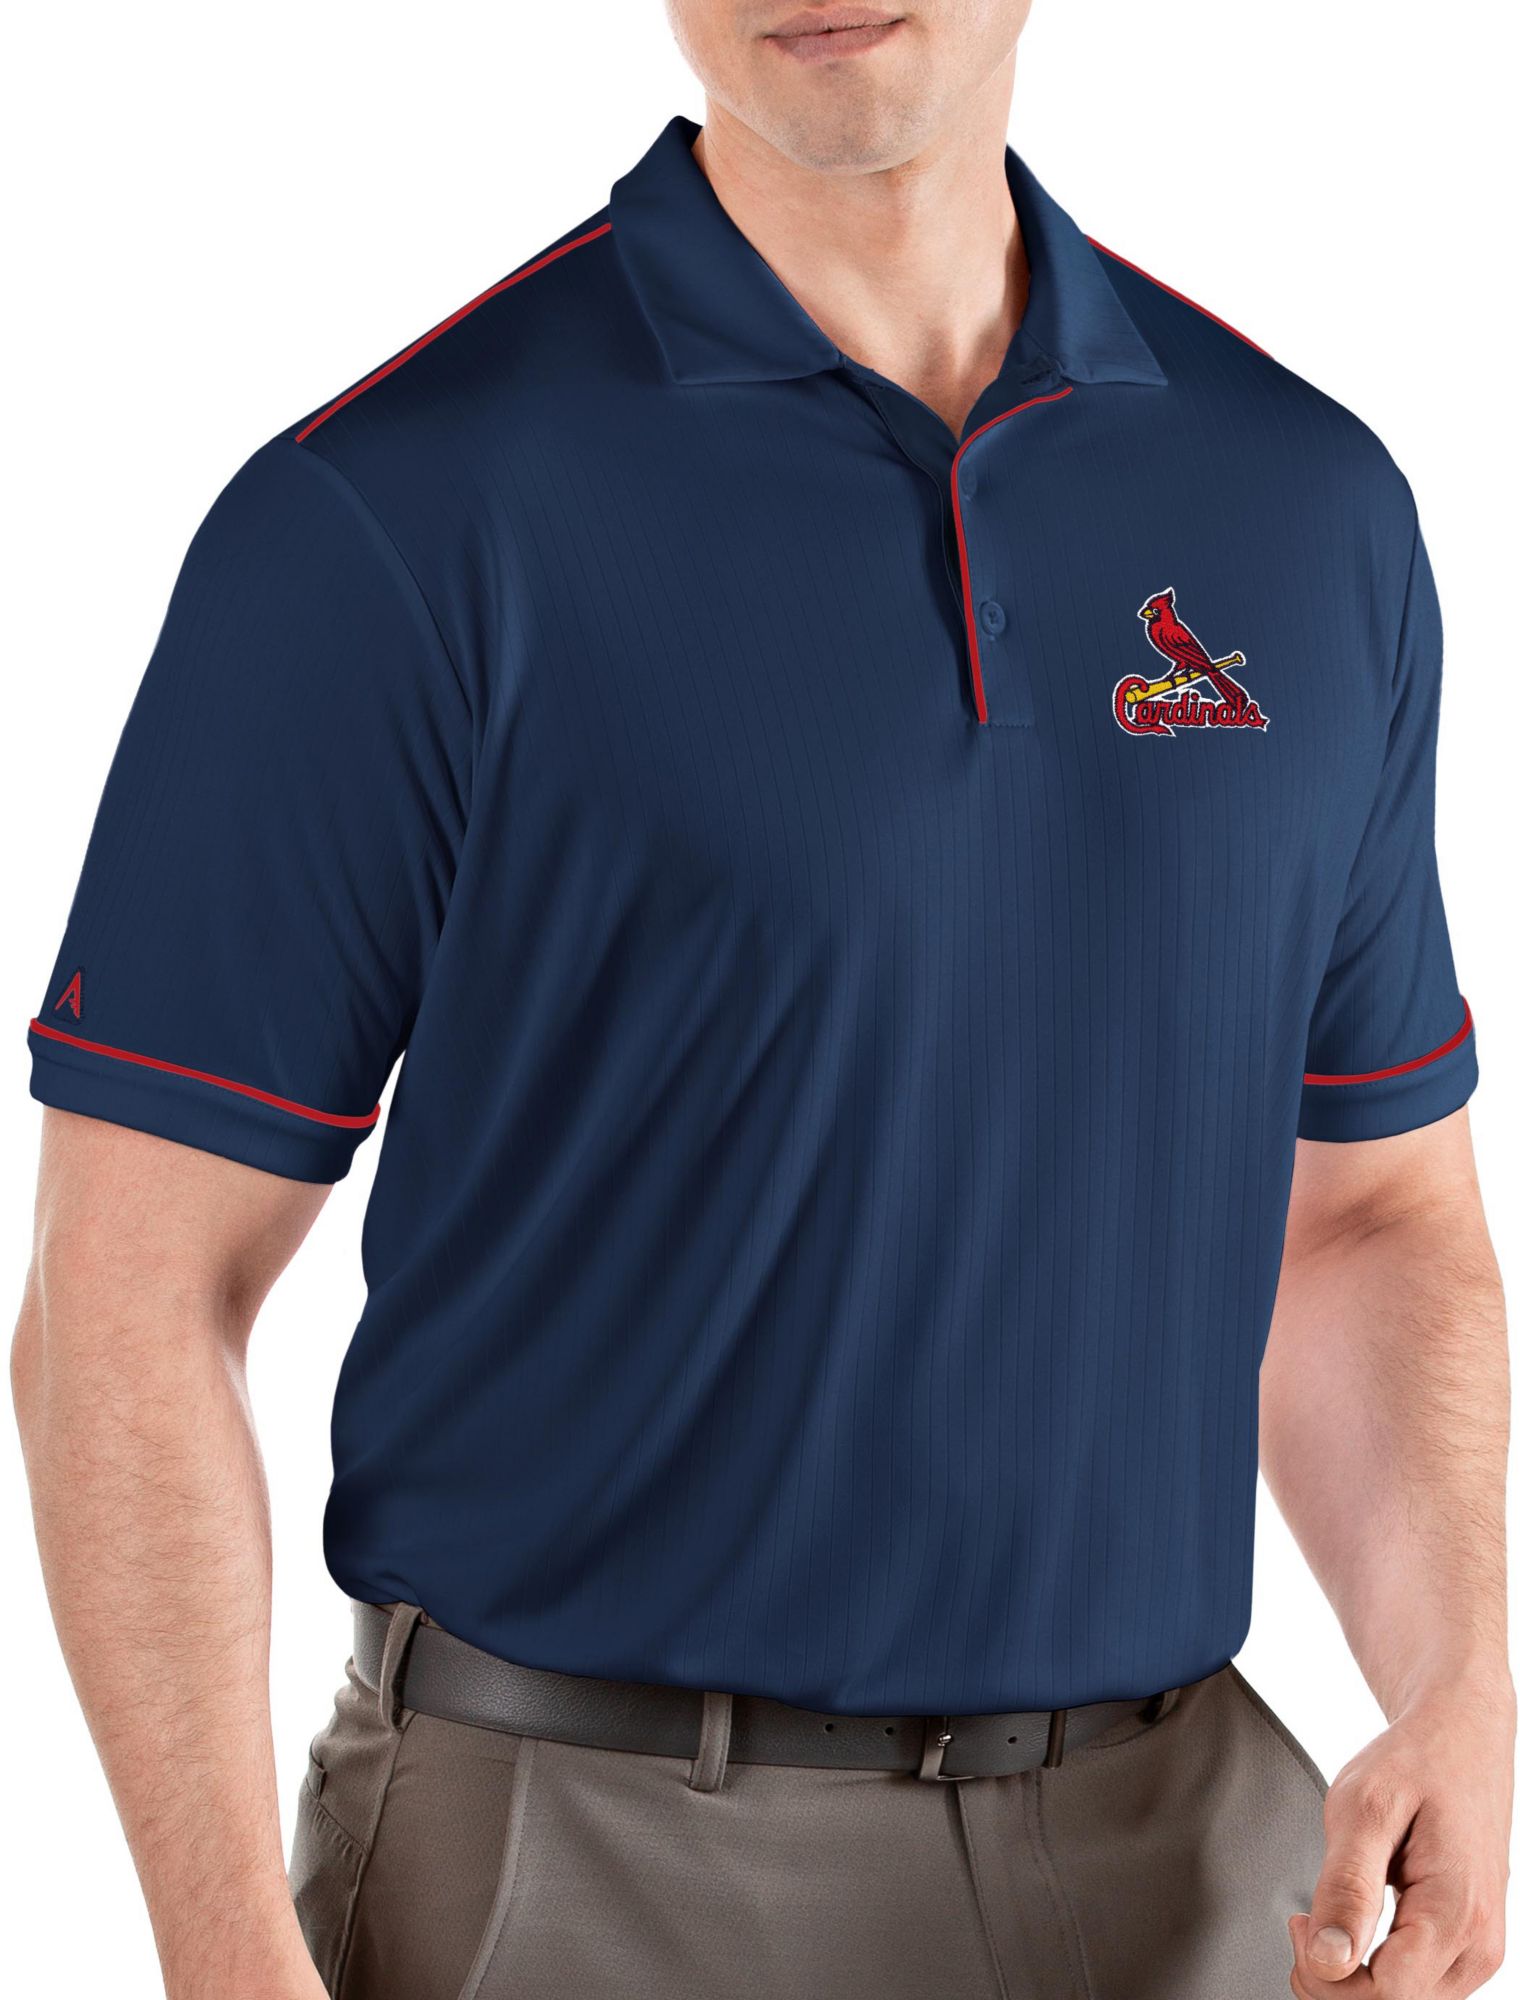 stl cardinals polo shirts